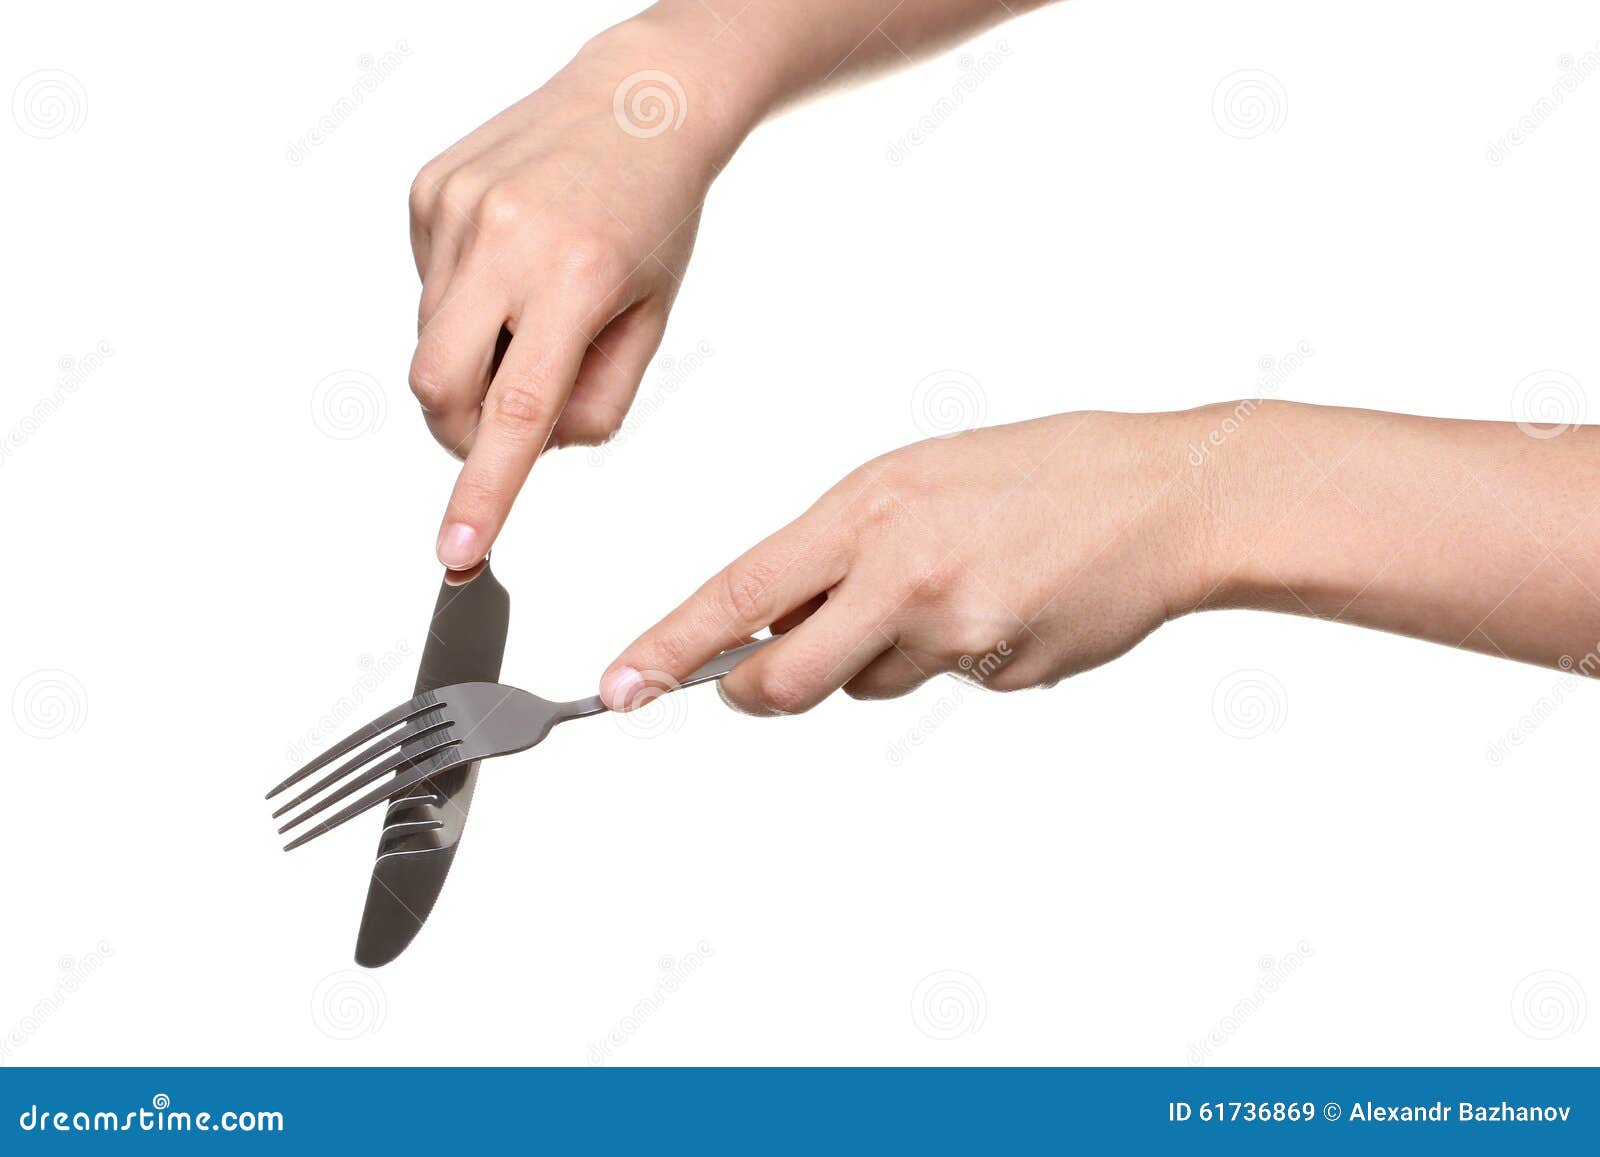 Ножик вилку или ложку не держите. Рука с вилкой. Руки с вилкой и ножом. Рука держит нож. Девушка держит вилку в руке.